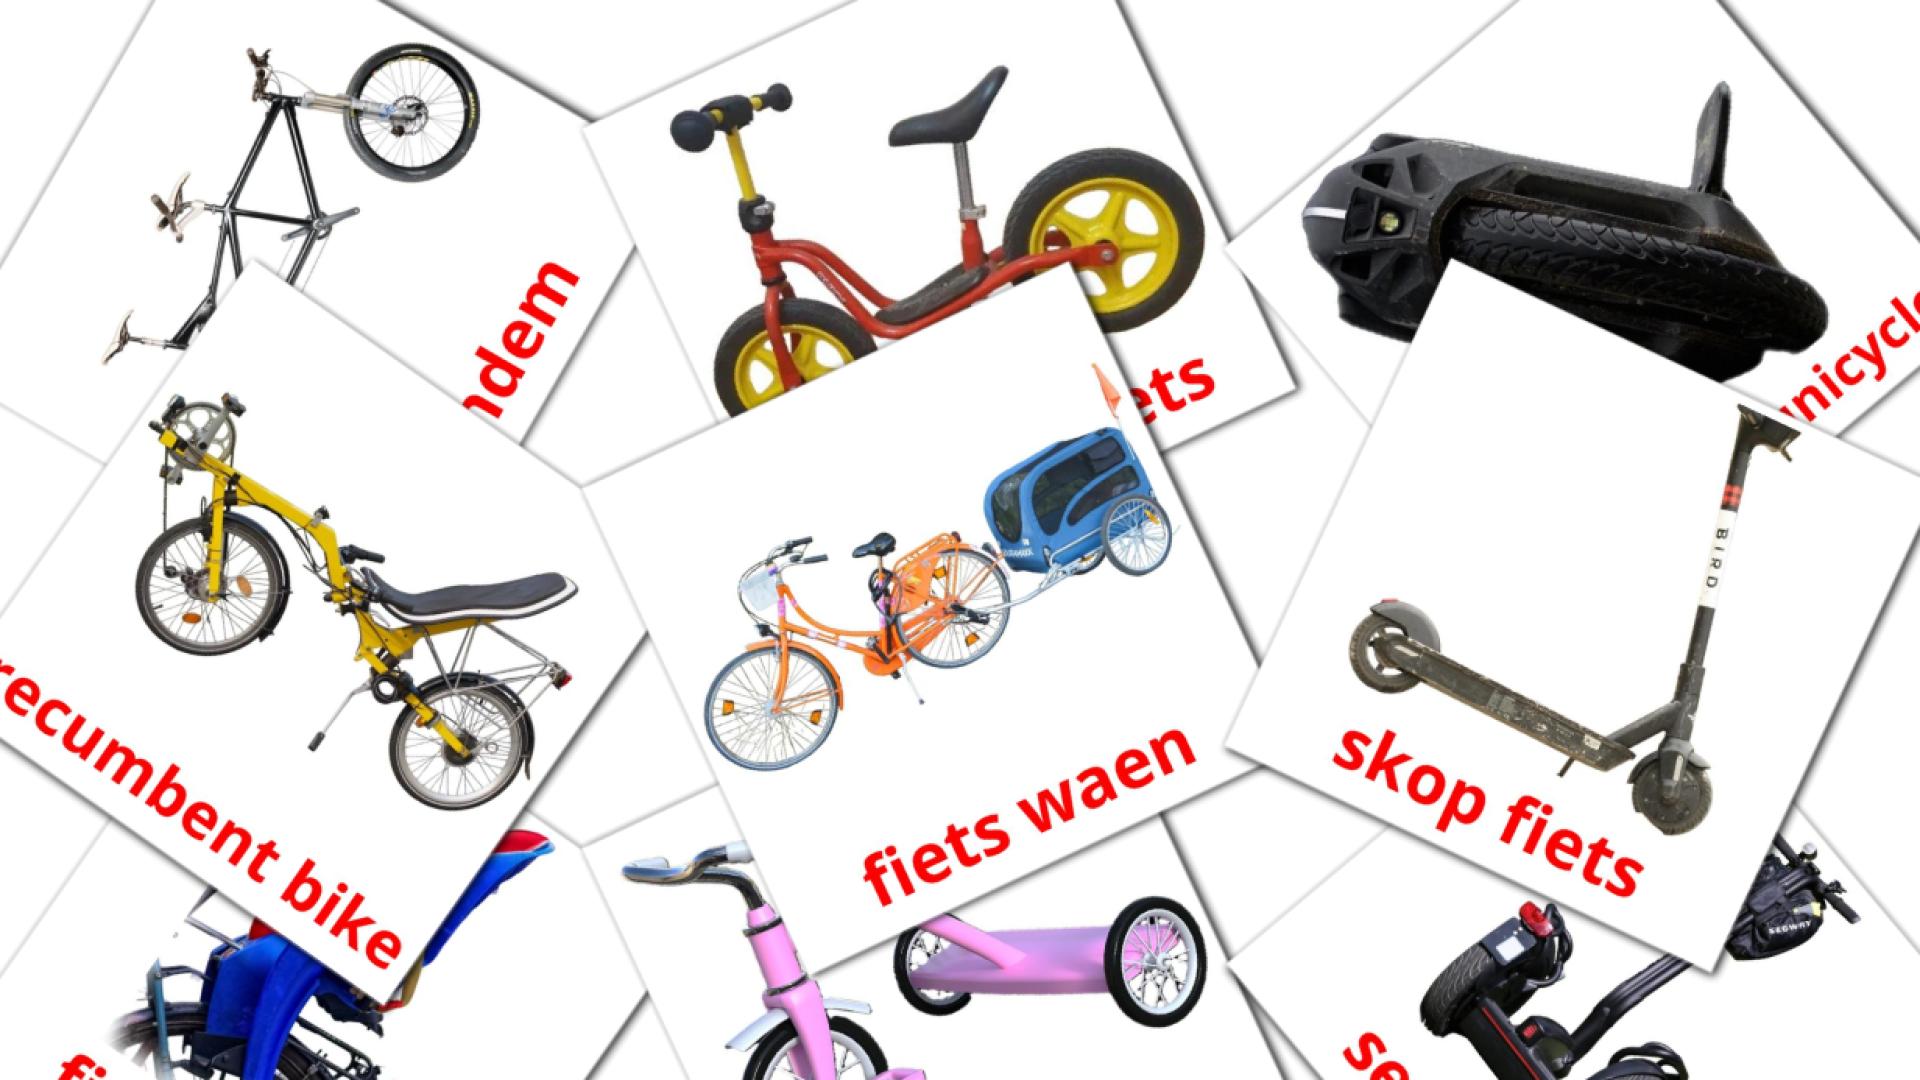 Transporte de Bicicleta - Cartões de vocabulário afrikaans